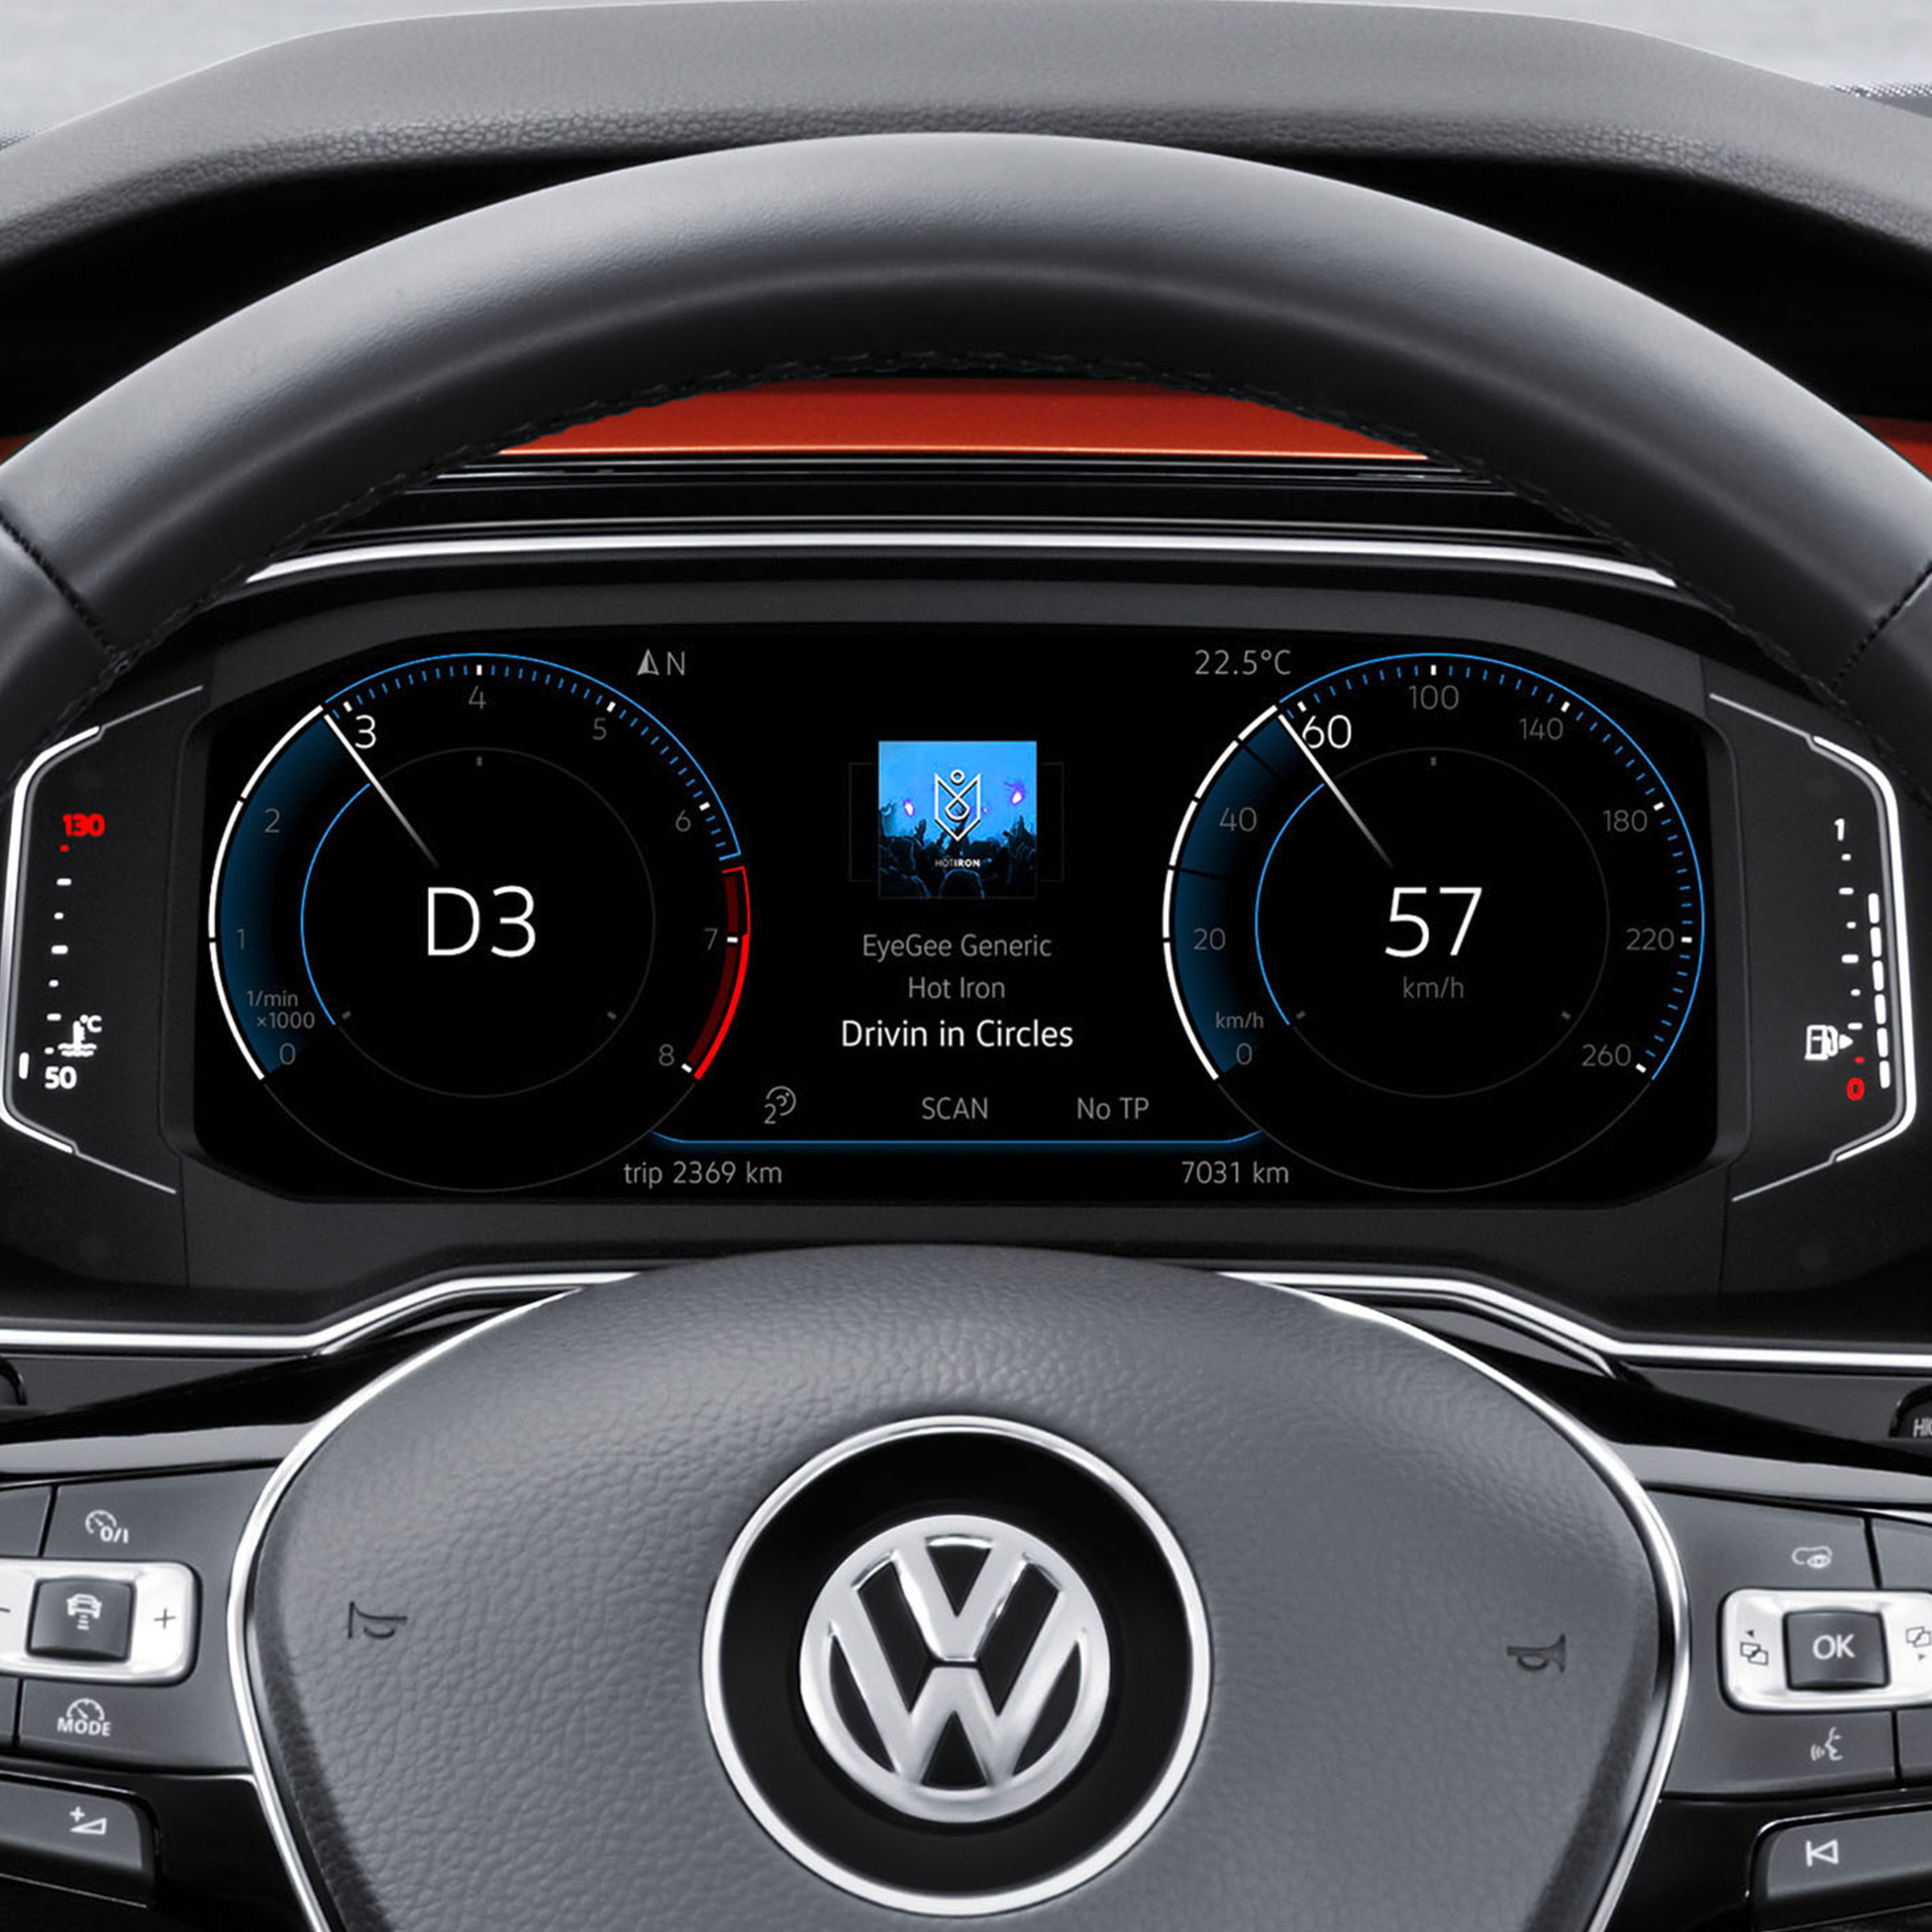 Volkswagen Polo Active info display